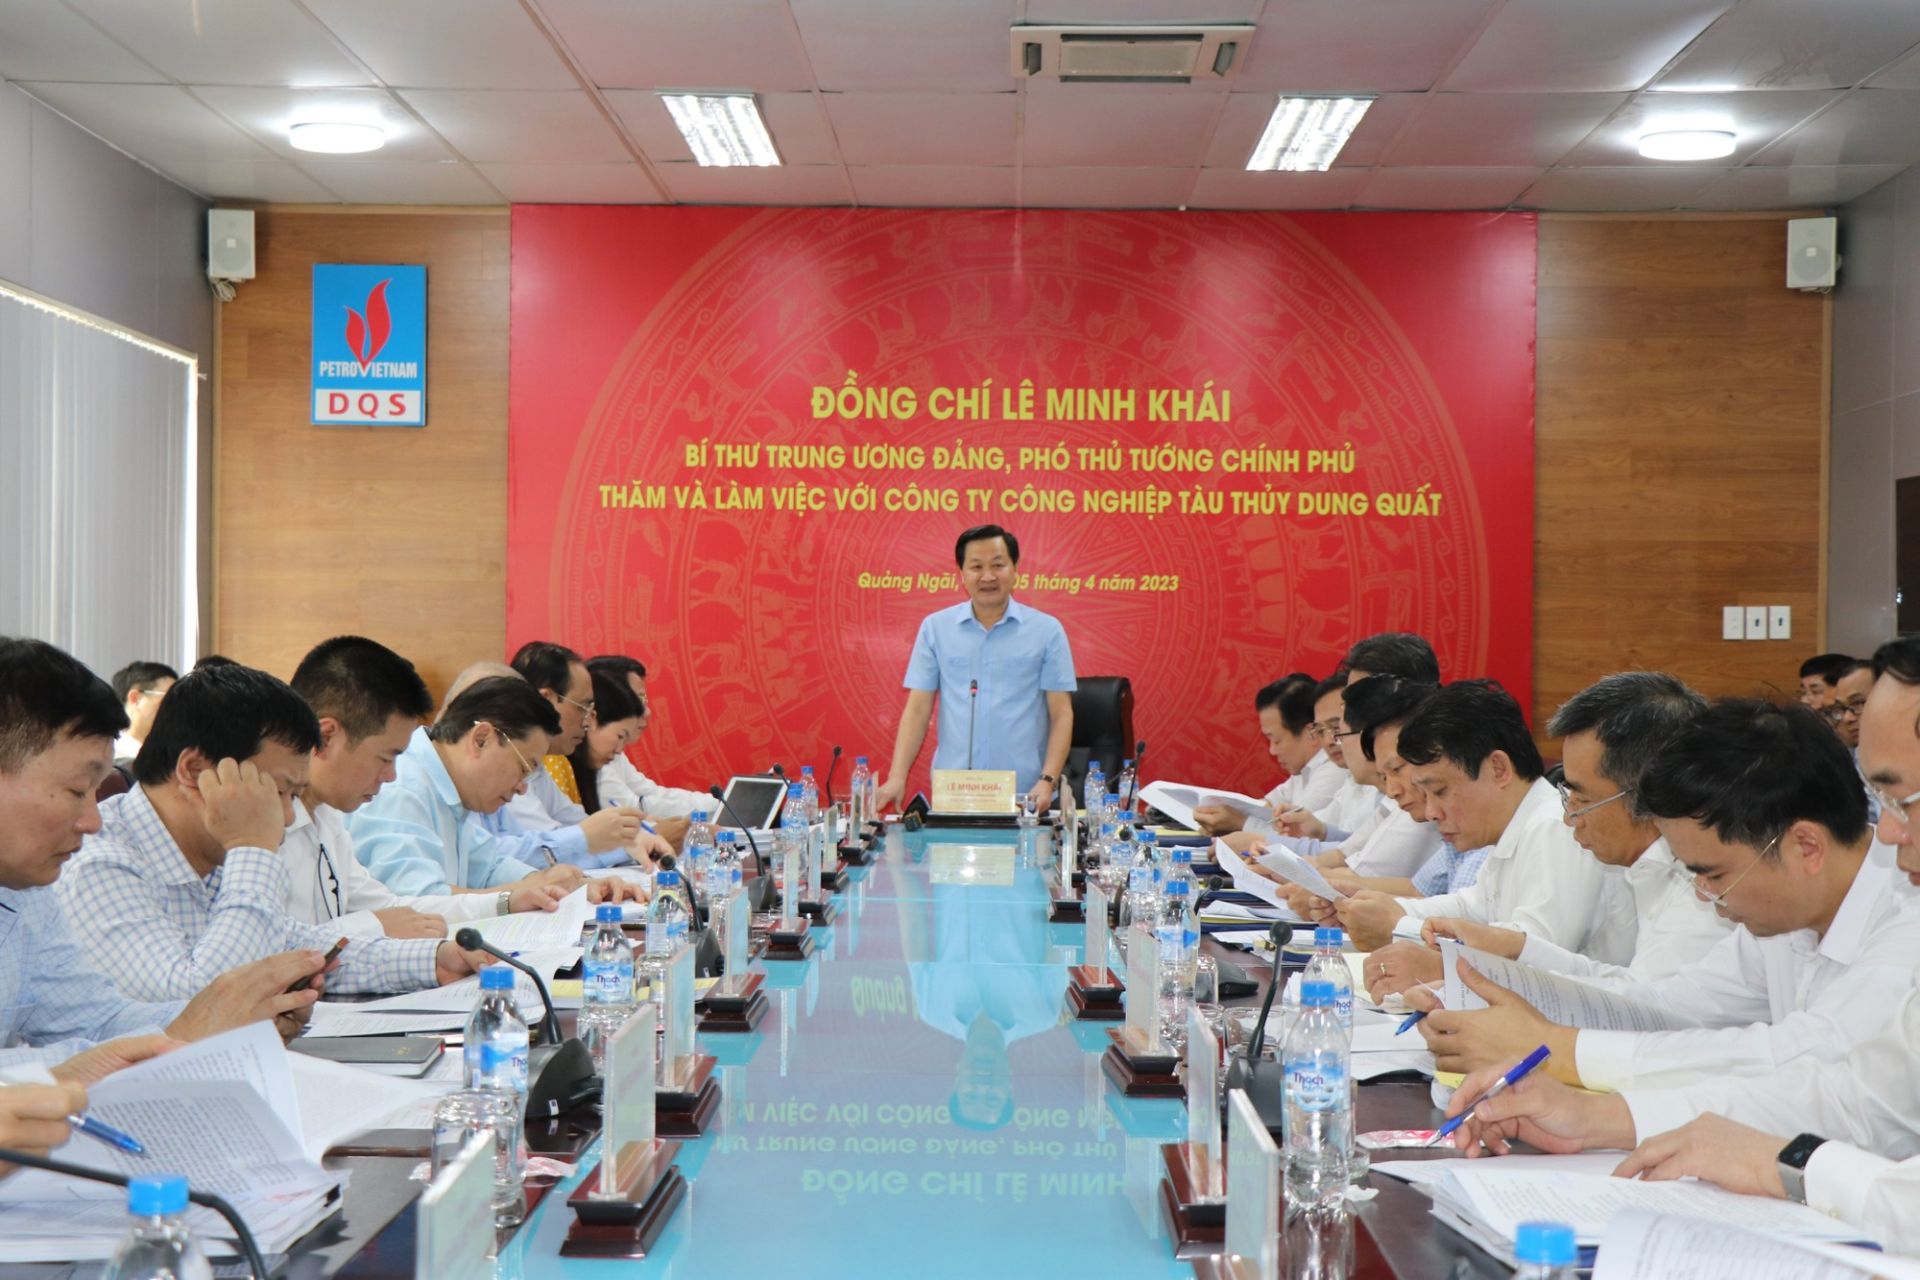 Phó Thủ tướng Lê Minh Khái làm việc với các bộ, ngành, cơ quan về phương án xử lý đối với Công ty Công nghiệp tàu thủy Dung Quất.